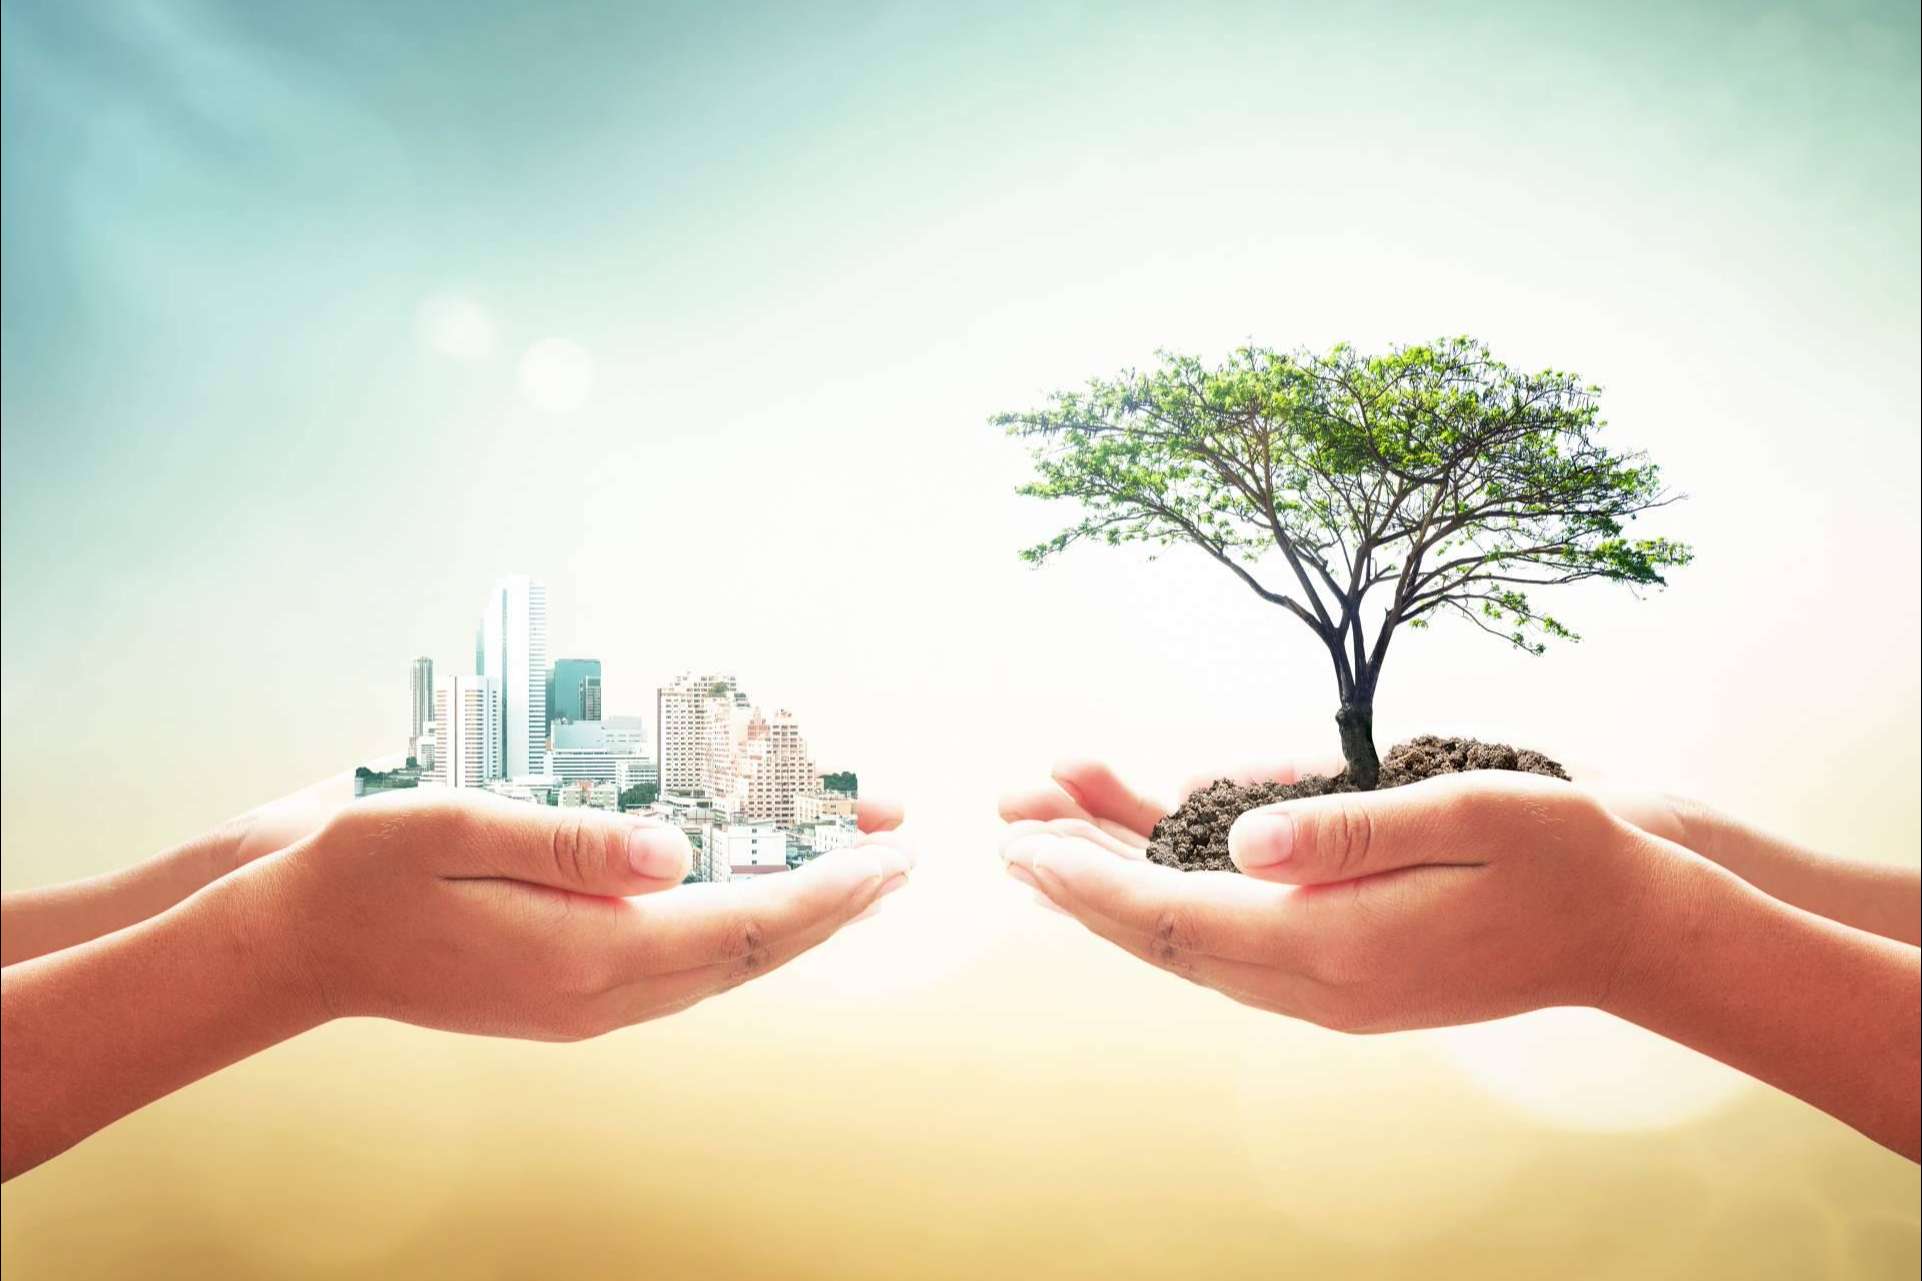 La importancia de la responsabilidad ambiental empresarial, por Ipostar